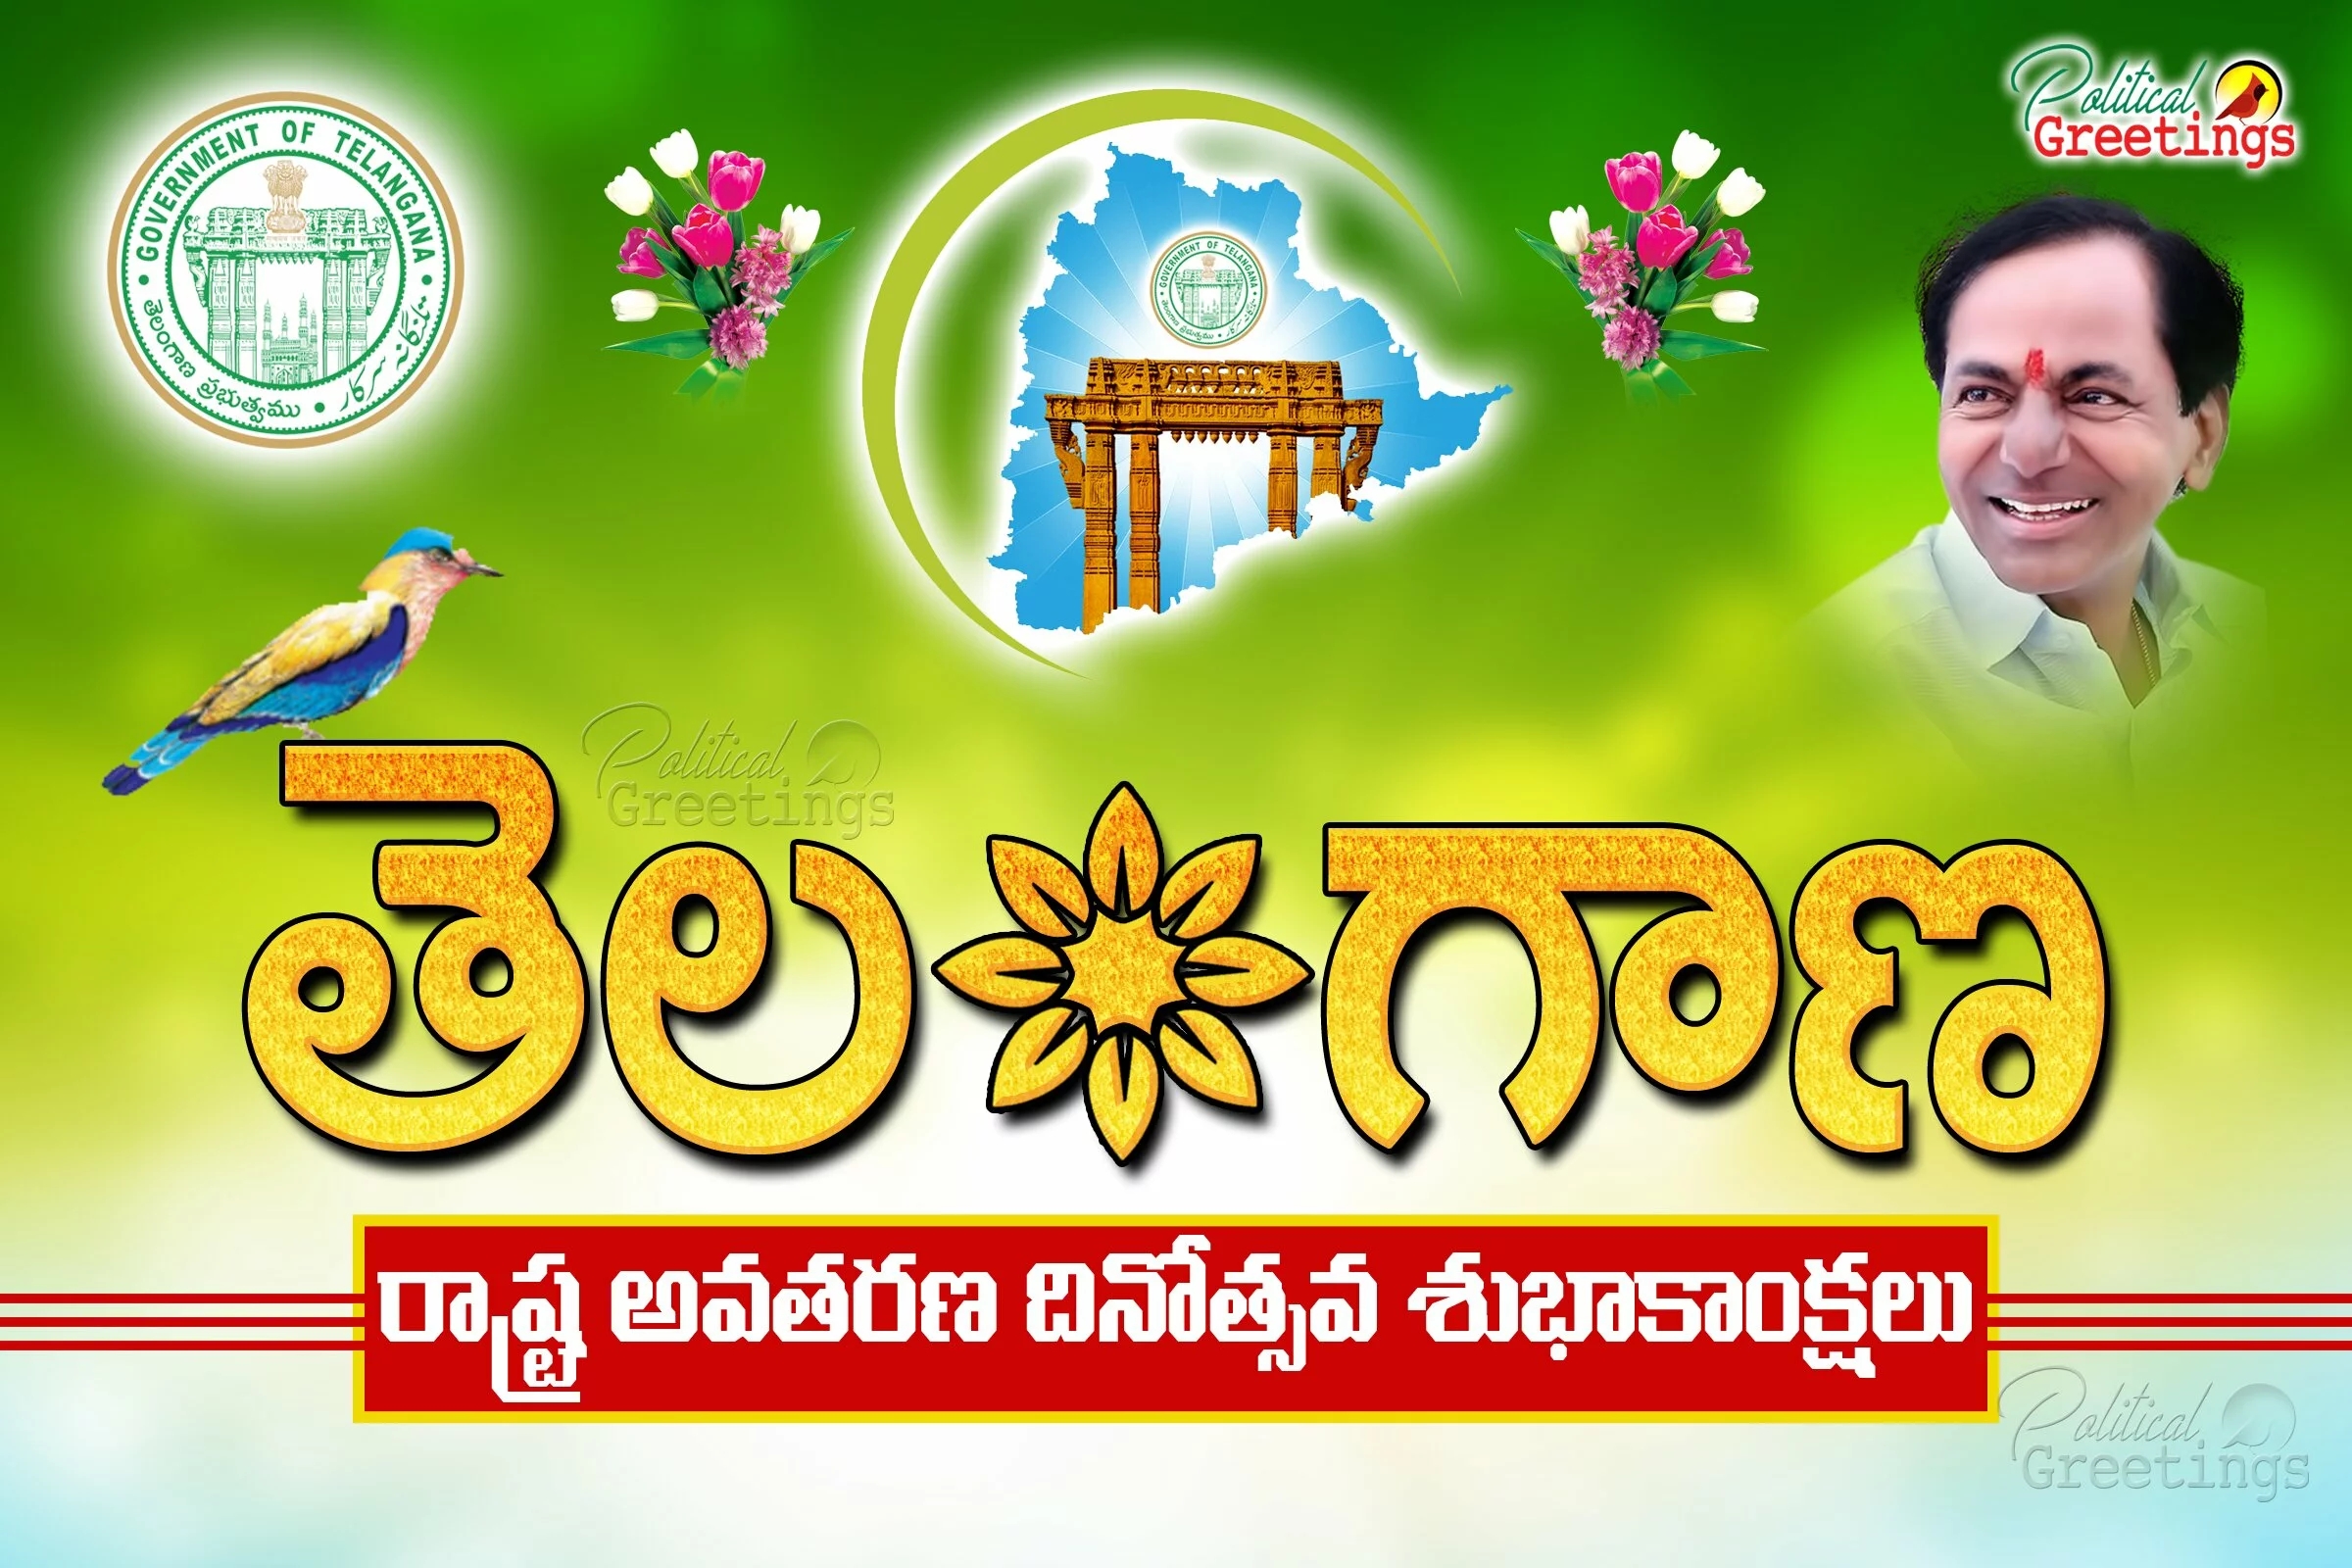 Telangana-Formation-Logo-slogans-celebrations-Telugu-poster1